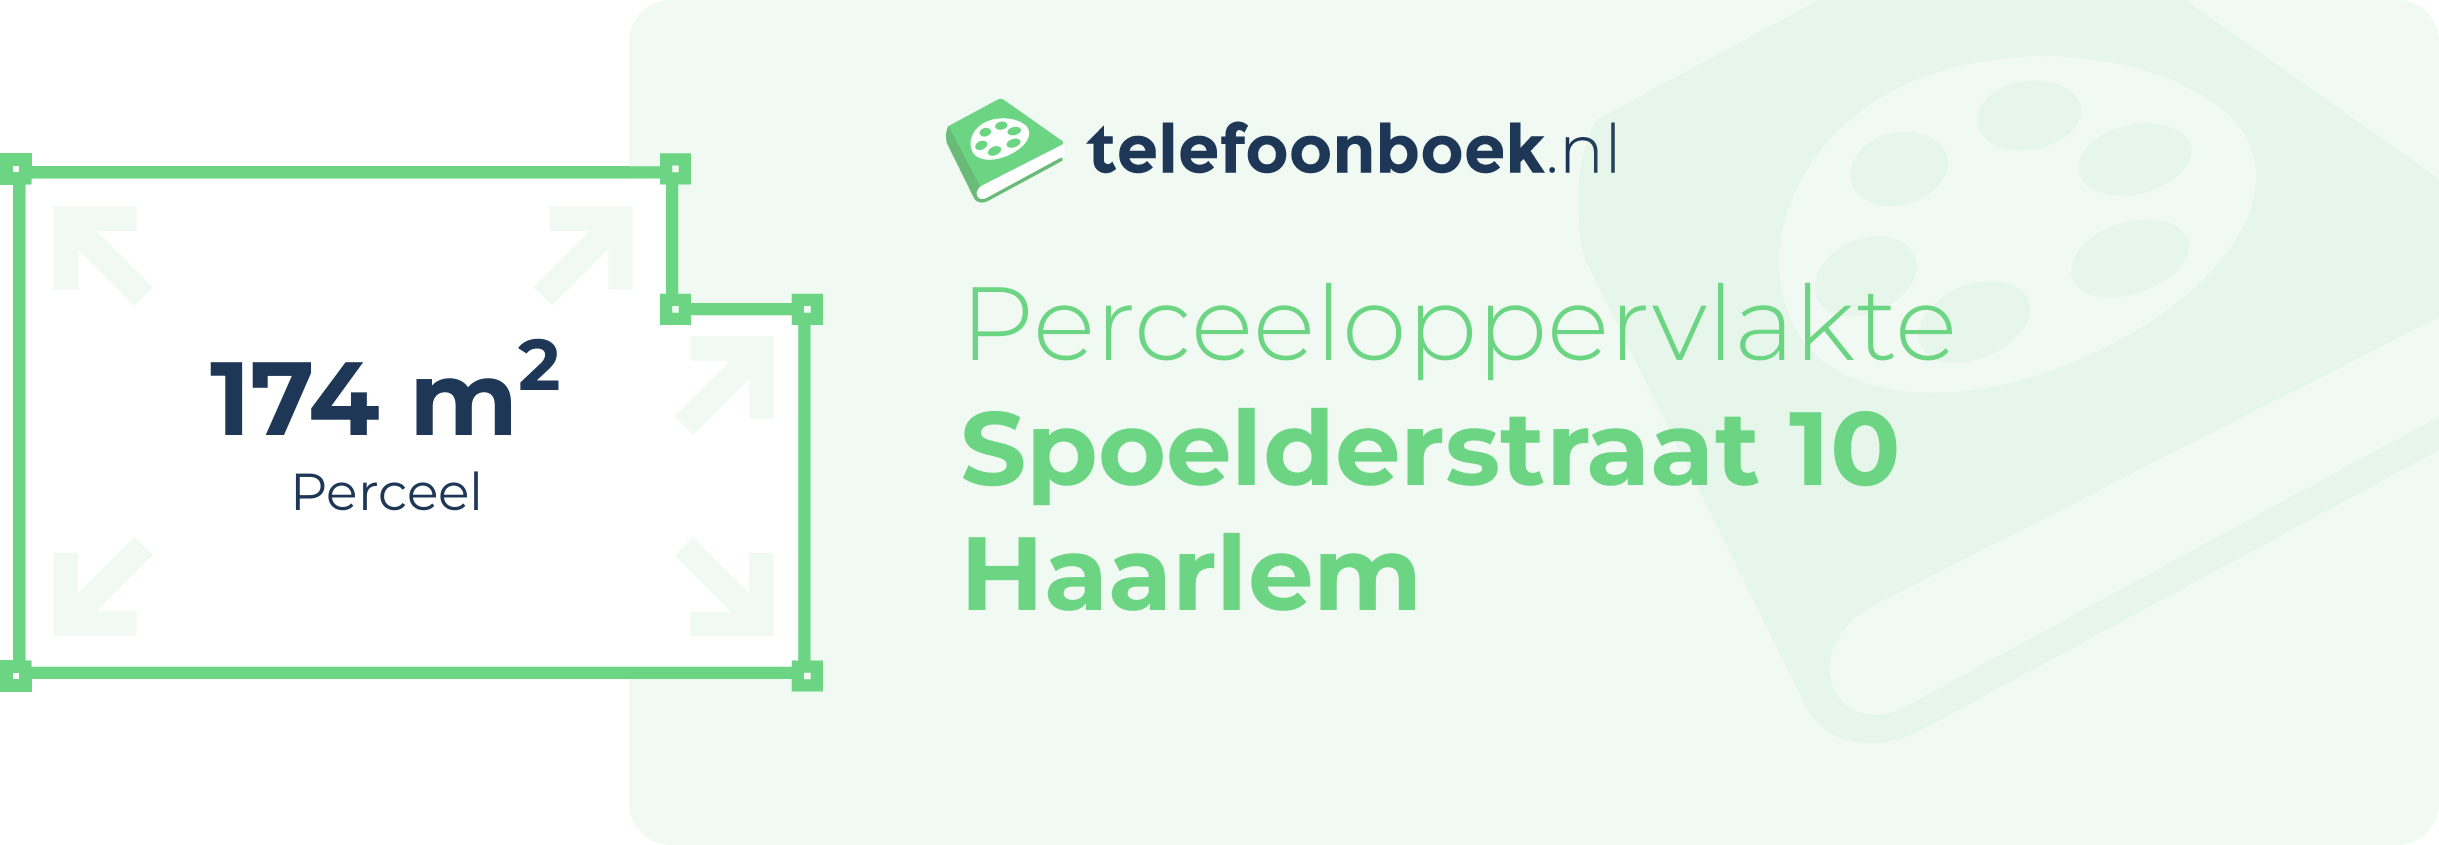 Perceeloppervlakte Spoelderstraat 10 Haarlem